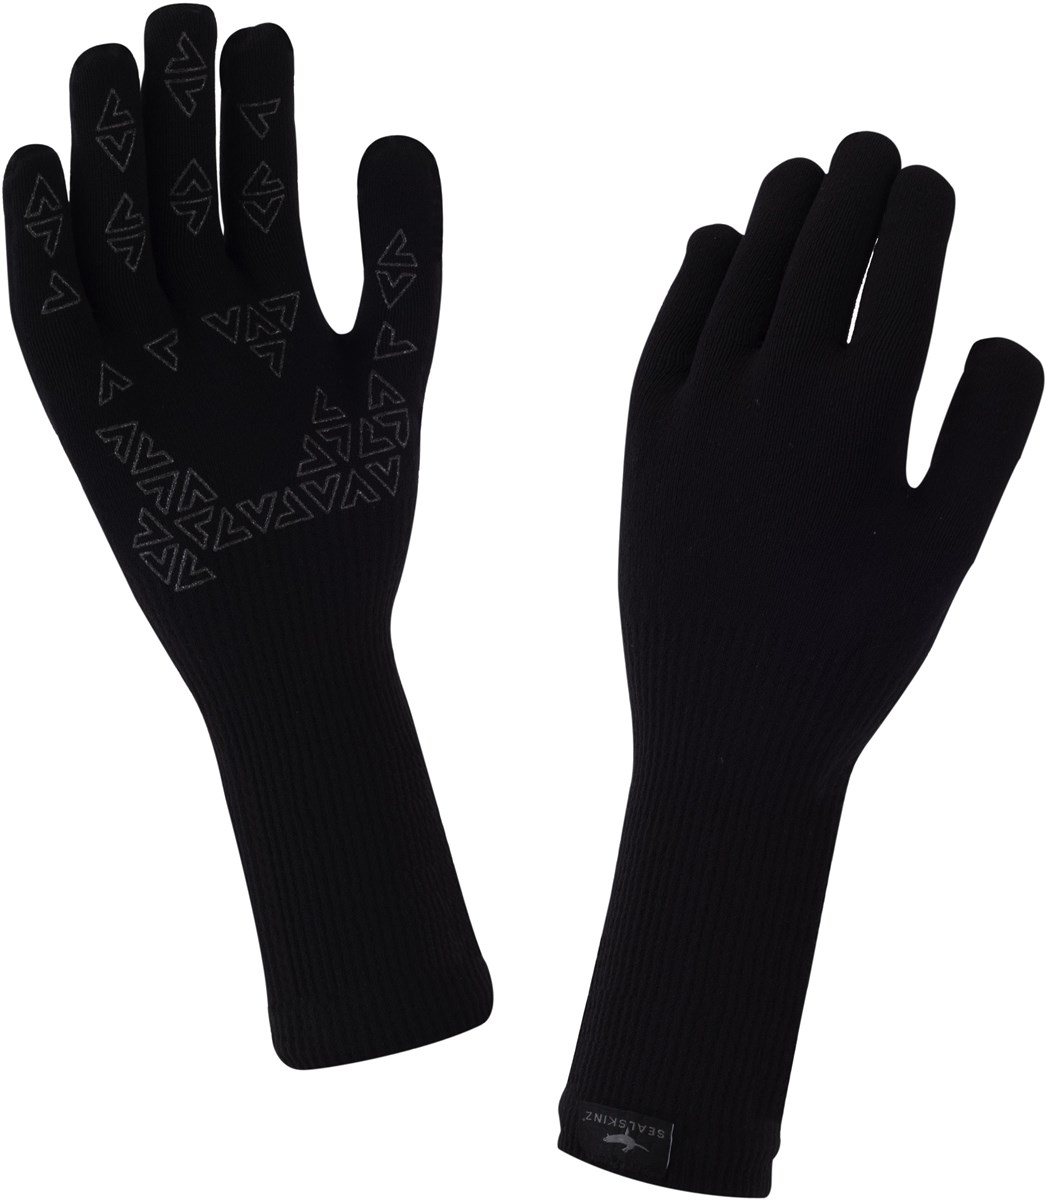 Sealskinz Ultra Grip Multi Sport Long Finger Gauntlet Gloves product image